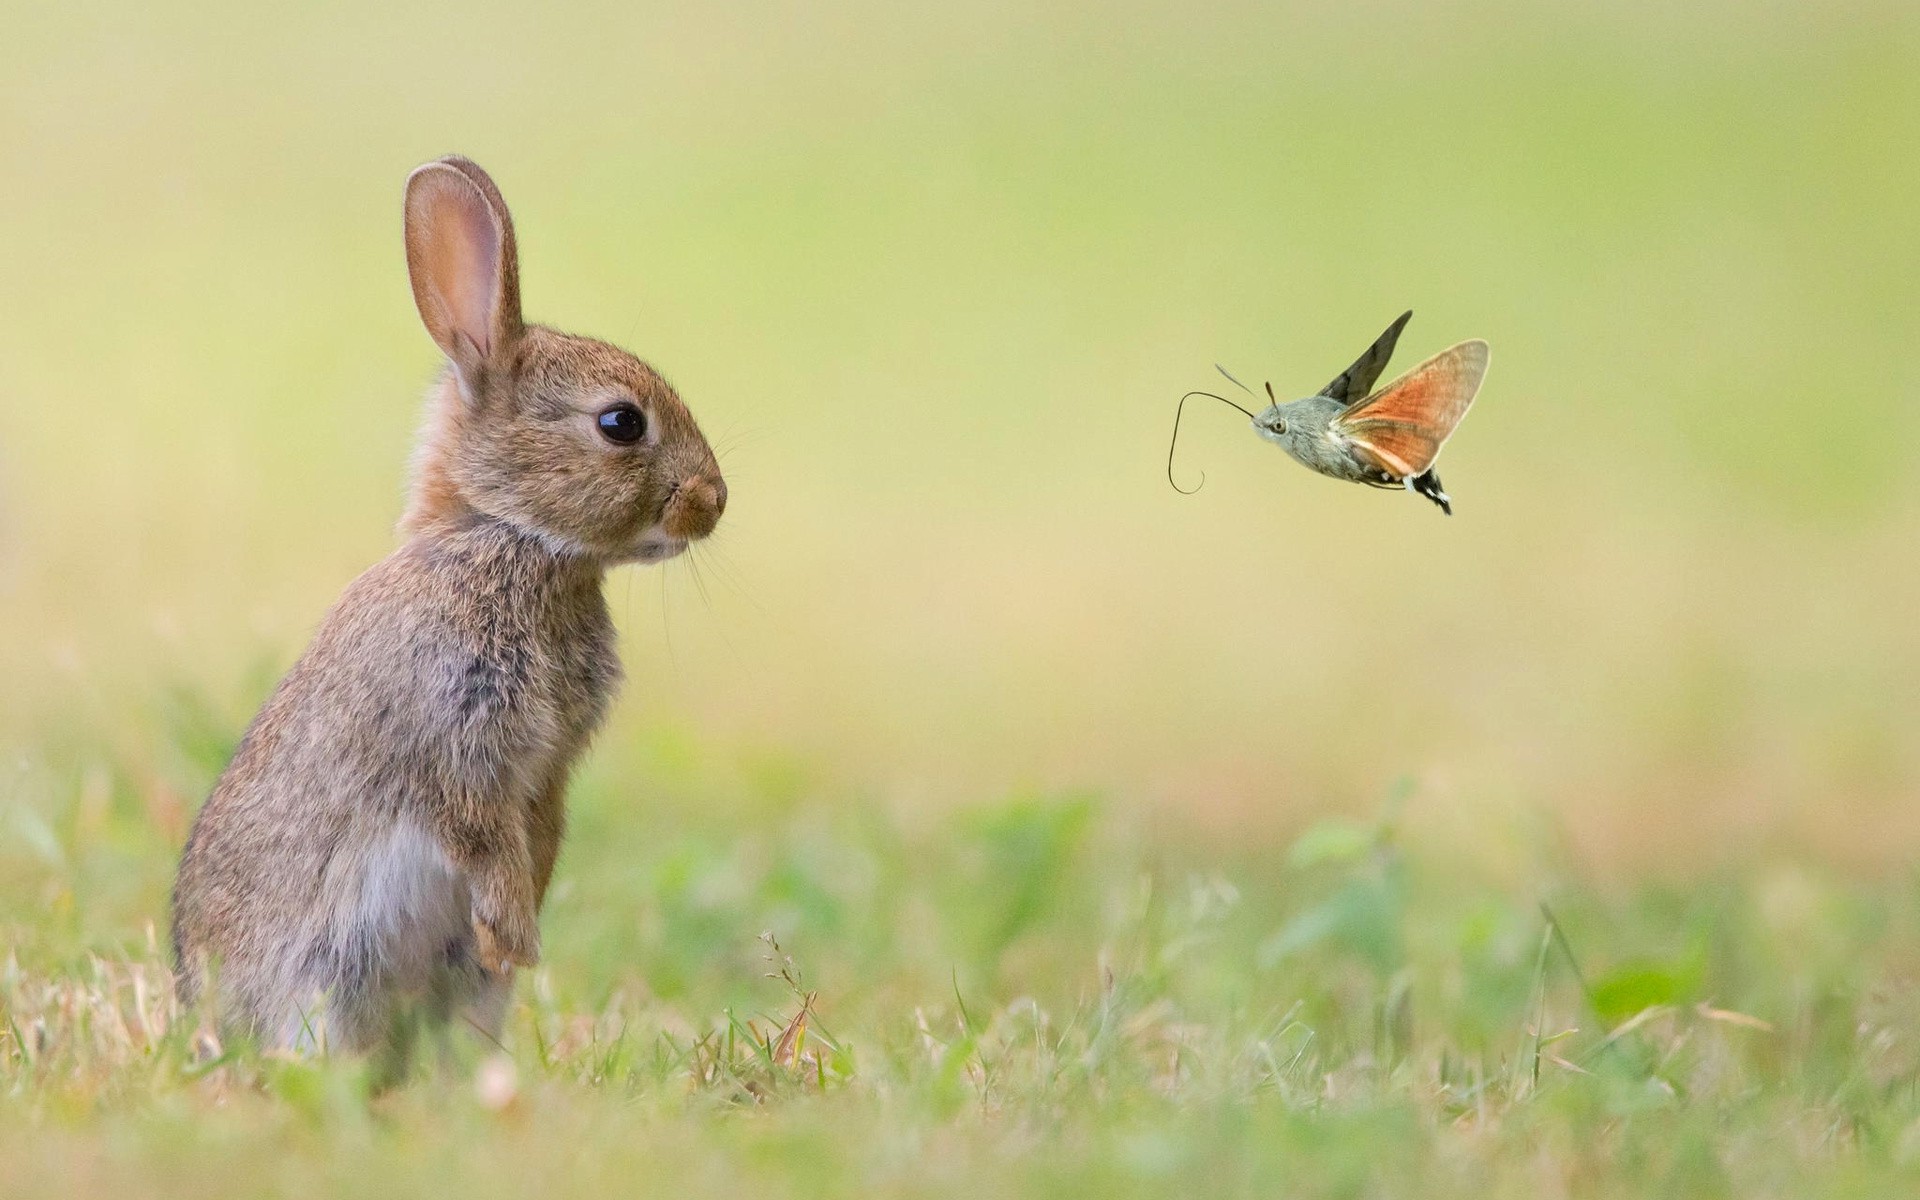 Скачать обои бесплатно Животные, Кролик картинка на рабочий стол ПК